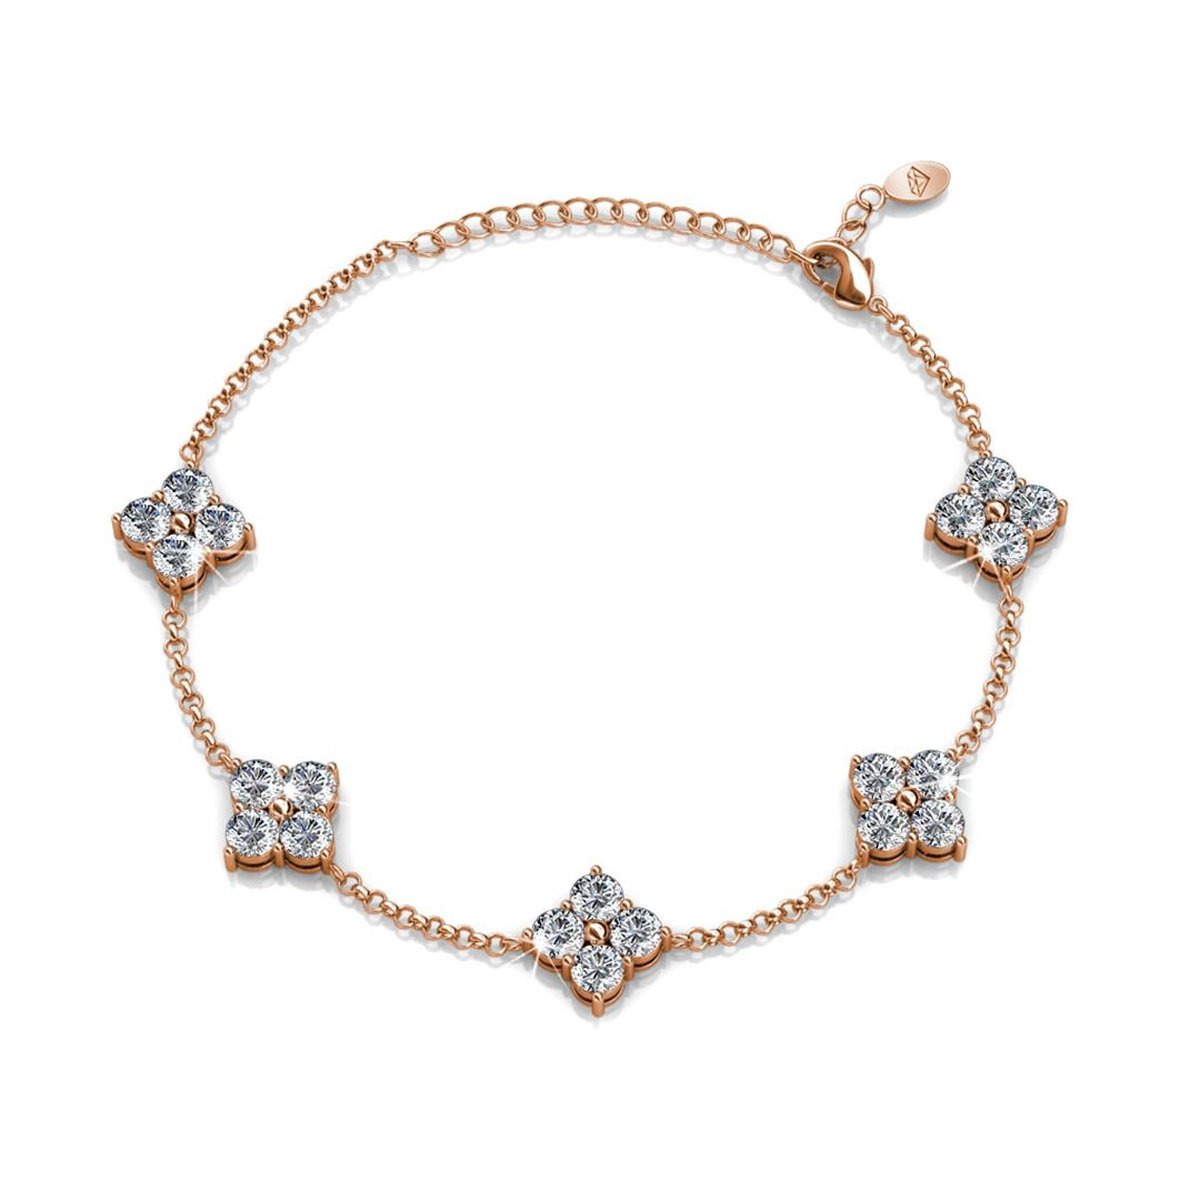 Shoplace Klaver armband dames met Swarovski kristallen - 18K Roségoud verguld – Swarovski armband - Cadeauverpakking - 20cm - Rosegoud - Valentijn cadeautje voor haar